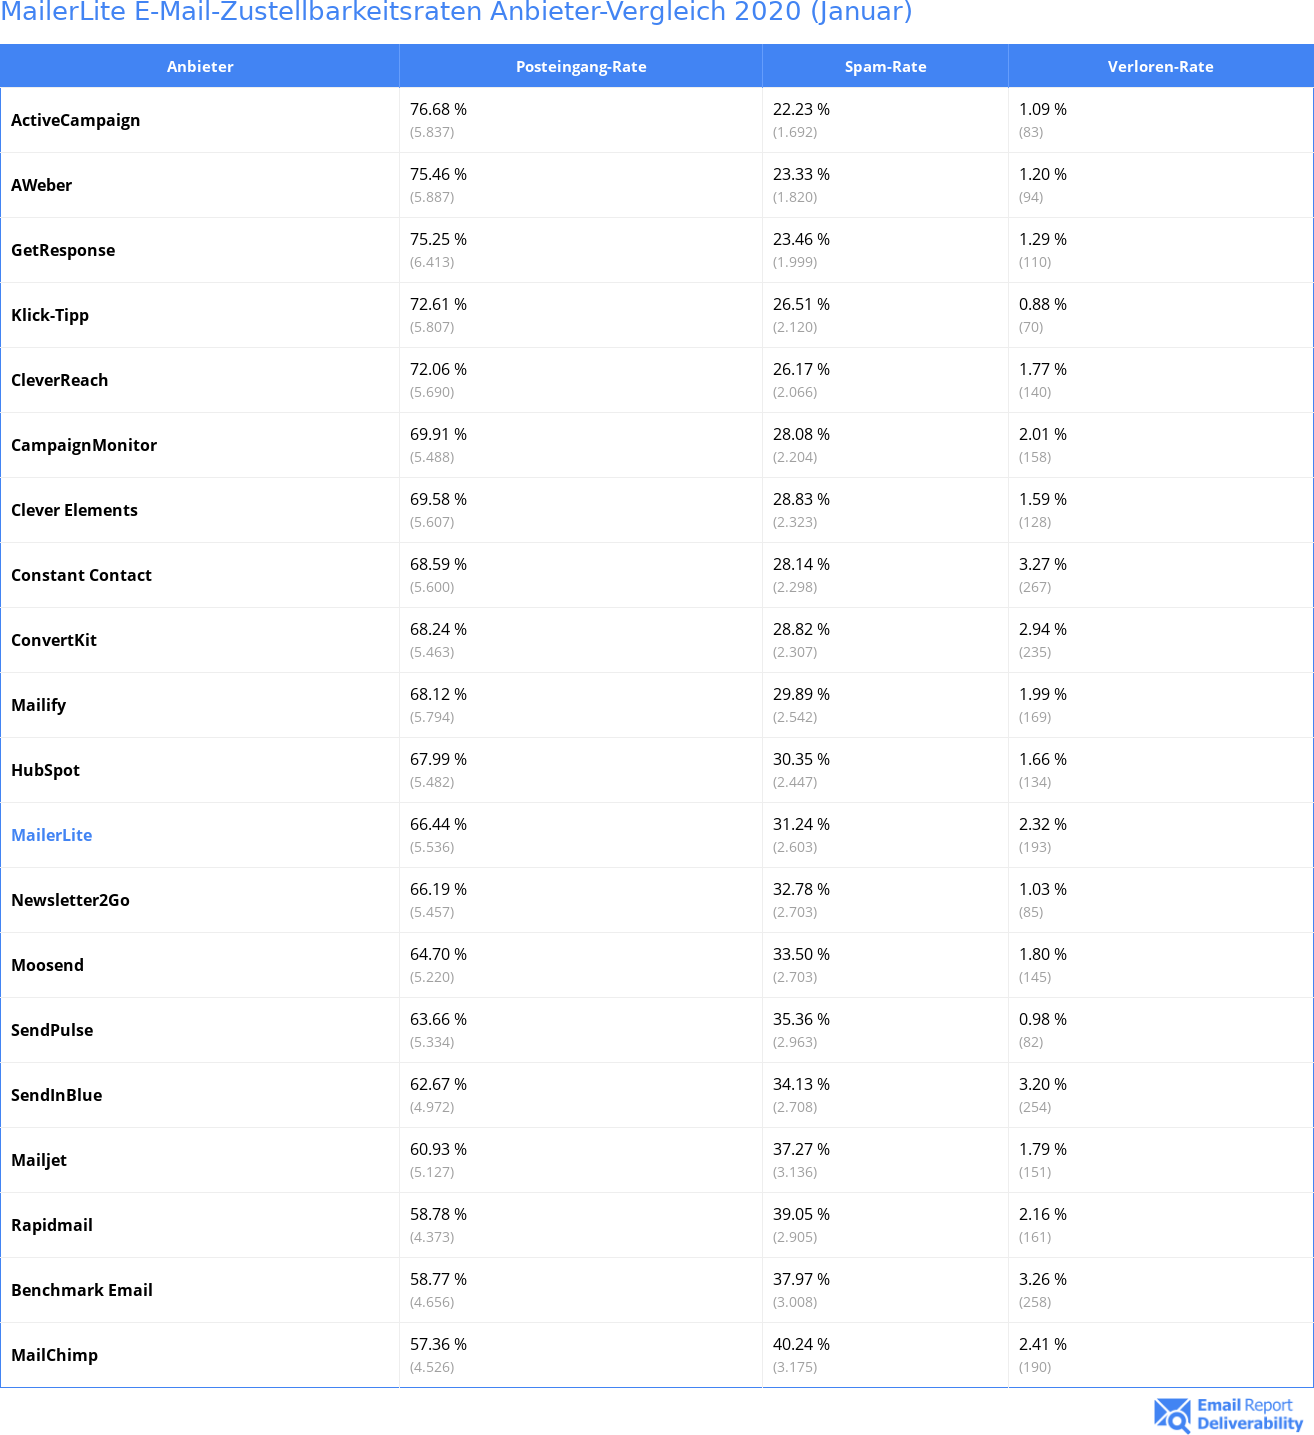 MailerLite E-Mail-Zustellbarkeitsraten Anbieter-Vergleich 2020 (Januar)